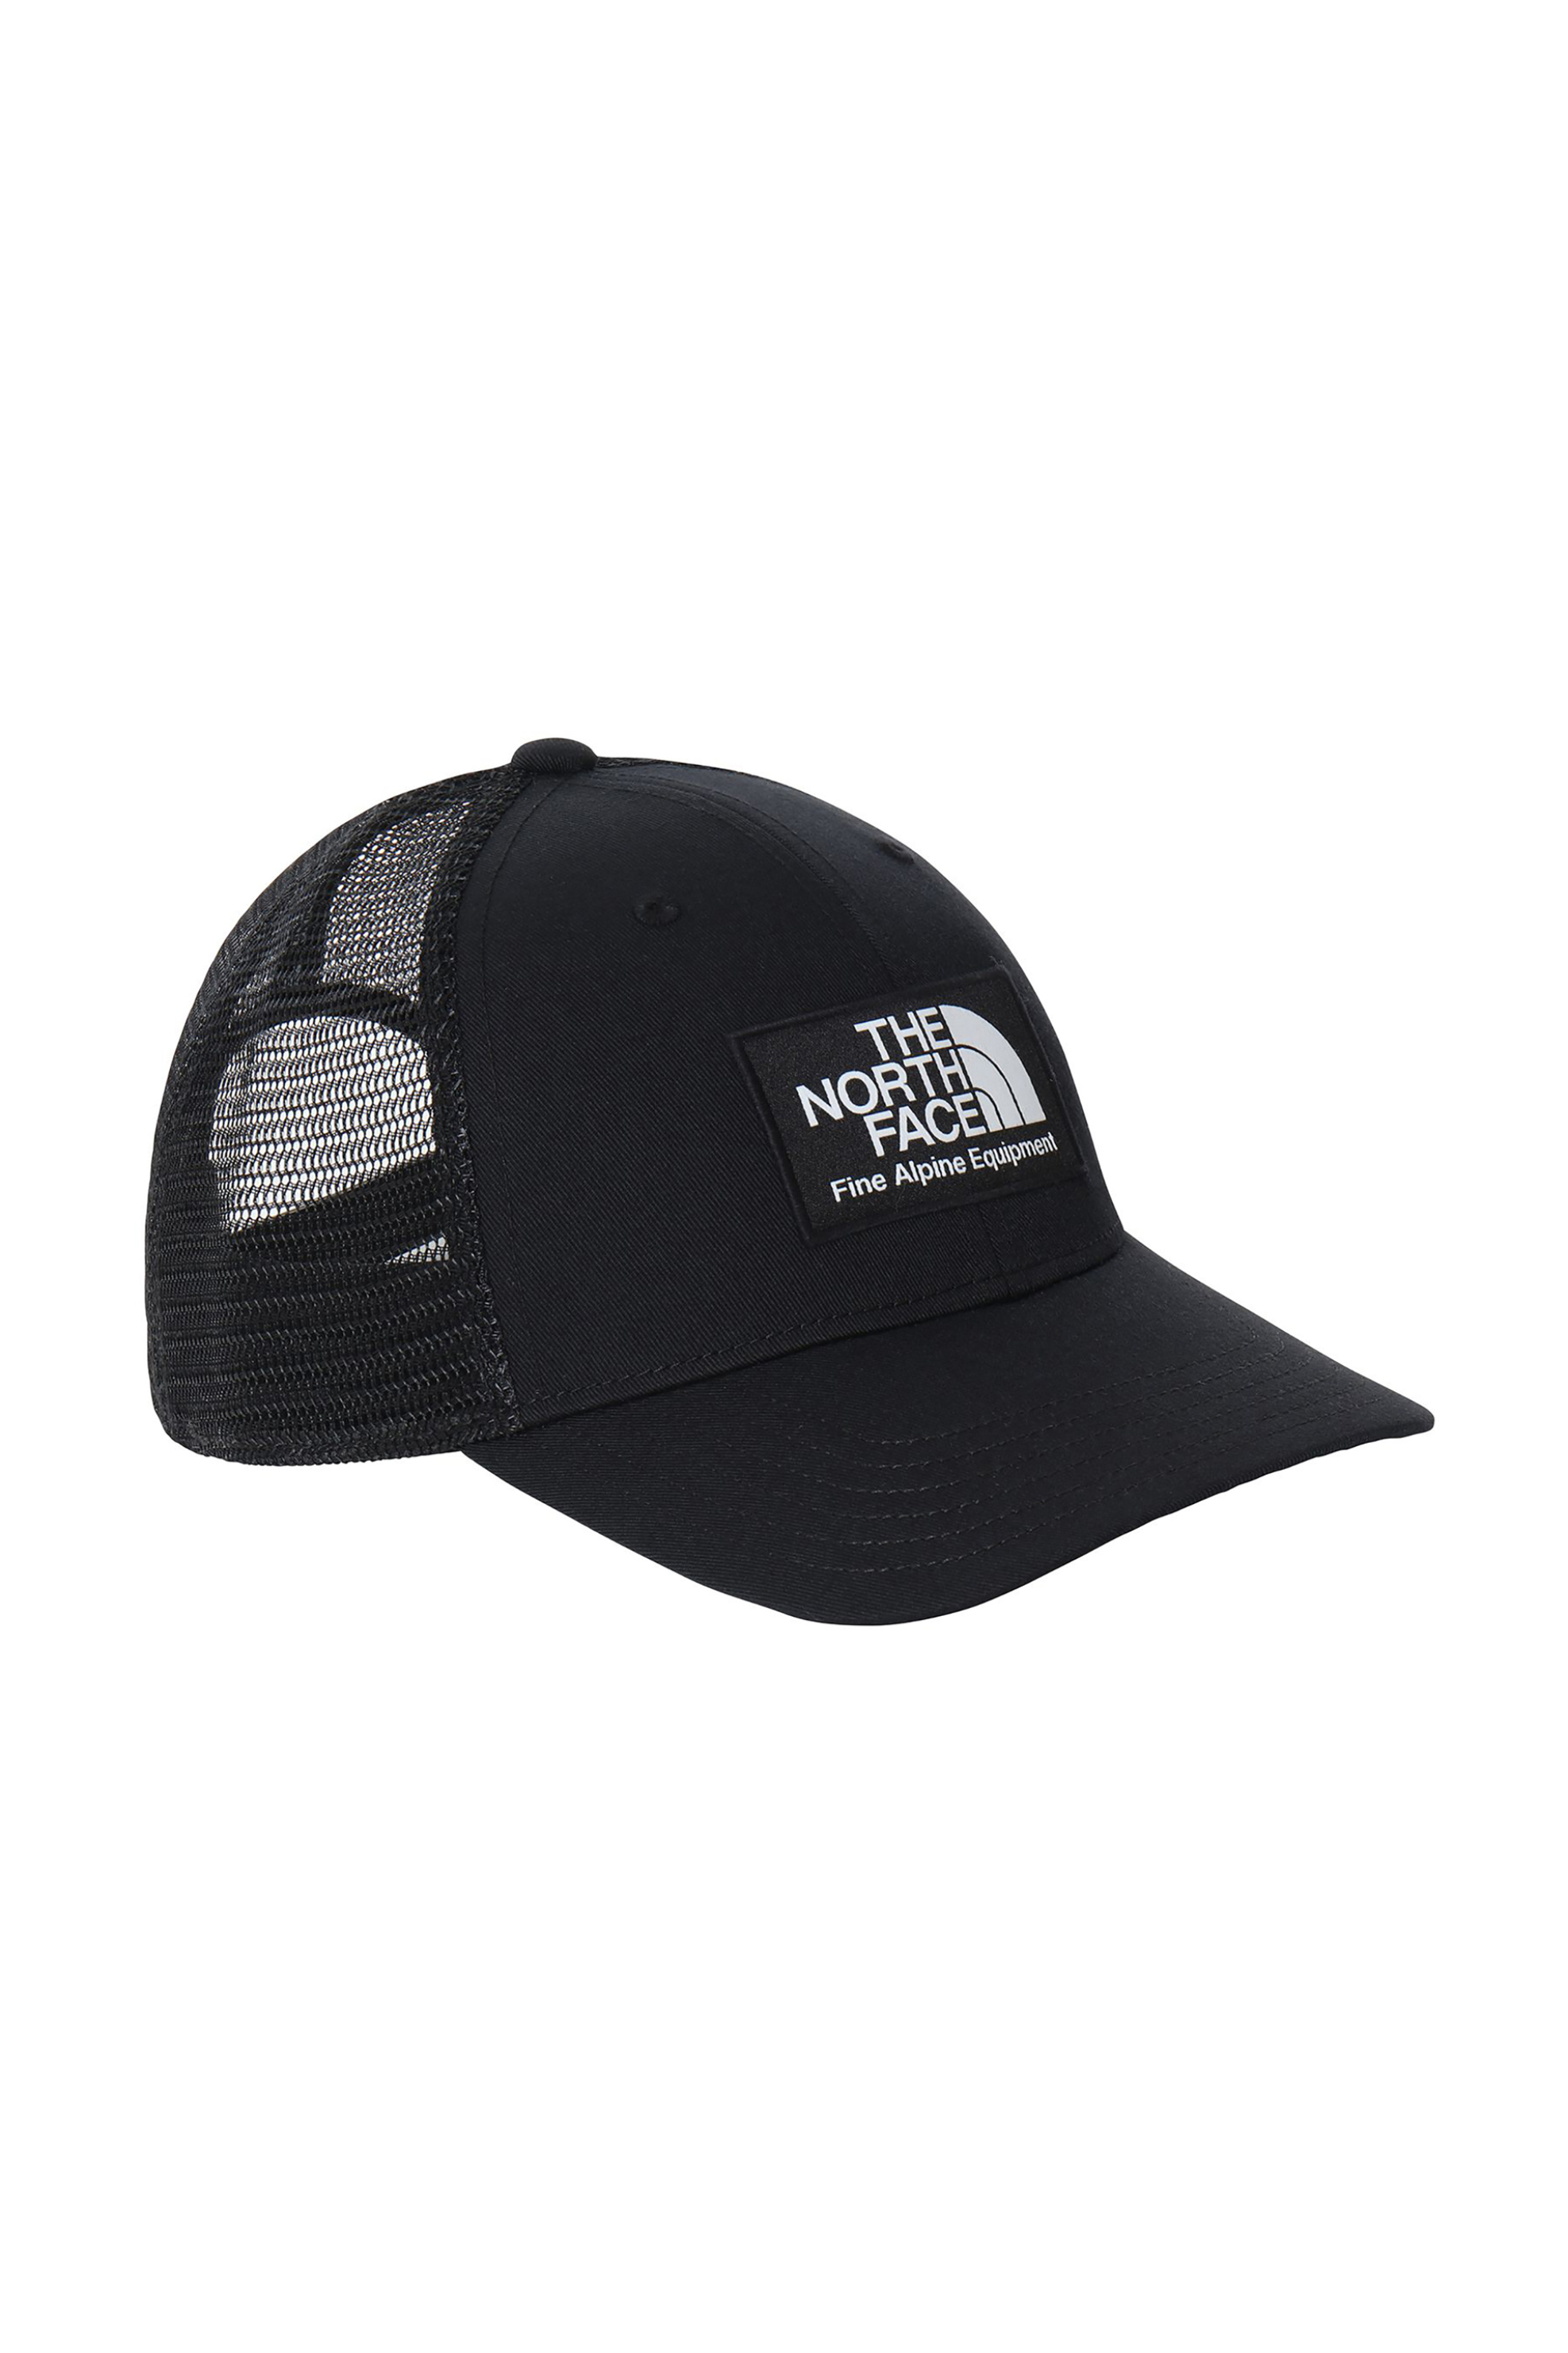 Ανδρική Μόδα > Ανδρικά Αξεσουάρ > Ανδρικά Καπέλα & Σκούφοι The North Face unisex καπέλο με κεντημένο λογότυπο "Mudder Trucker" - NF0A5FX8JK31 Μαύρο